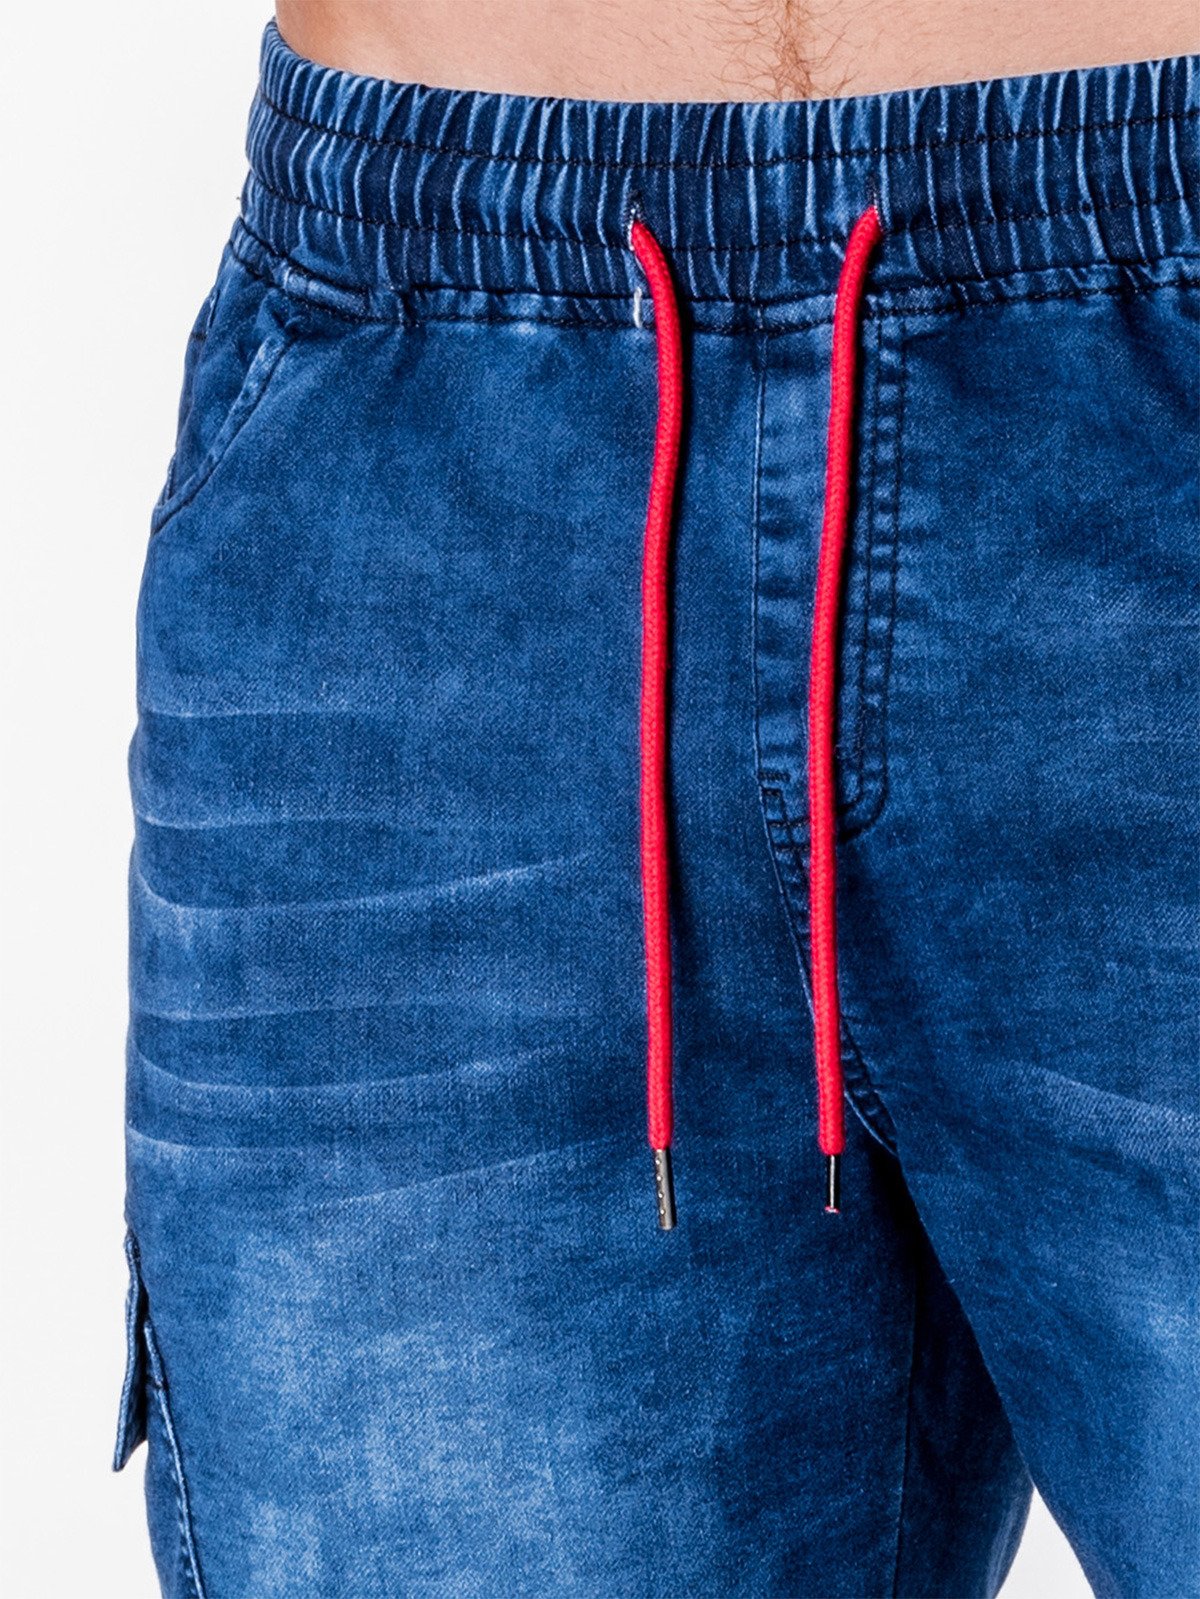 Men's denim jogger pants - blue P710 | MODONE wholesale - Clothing For Men